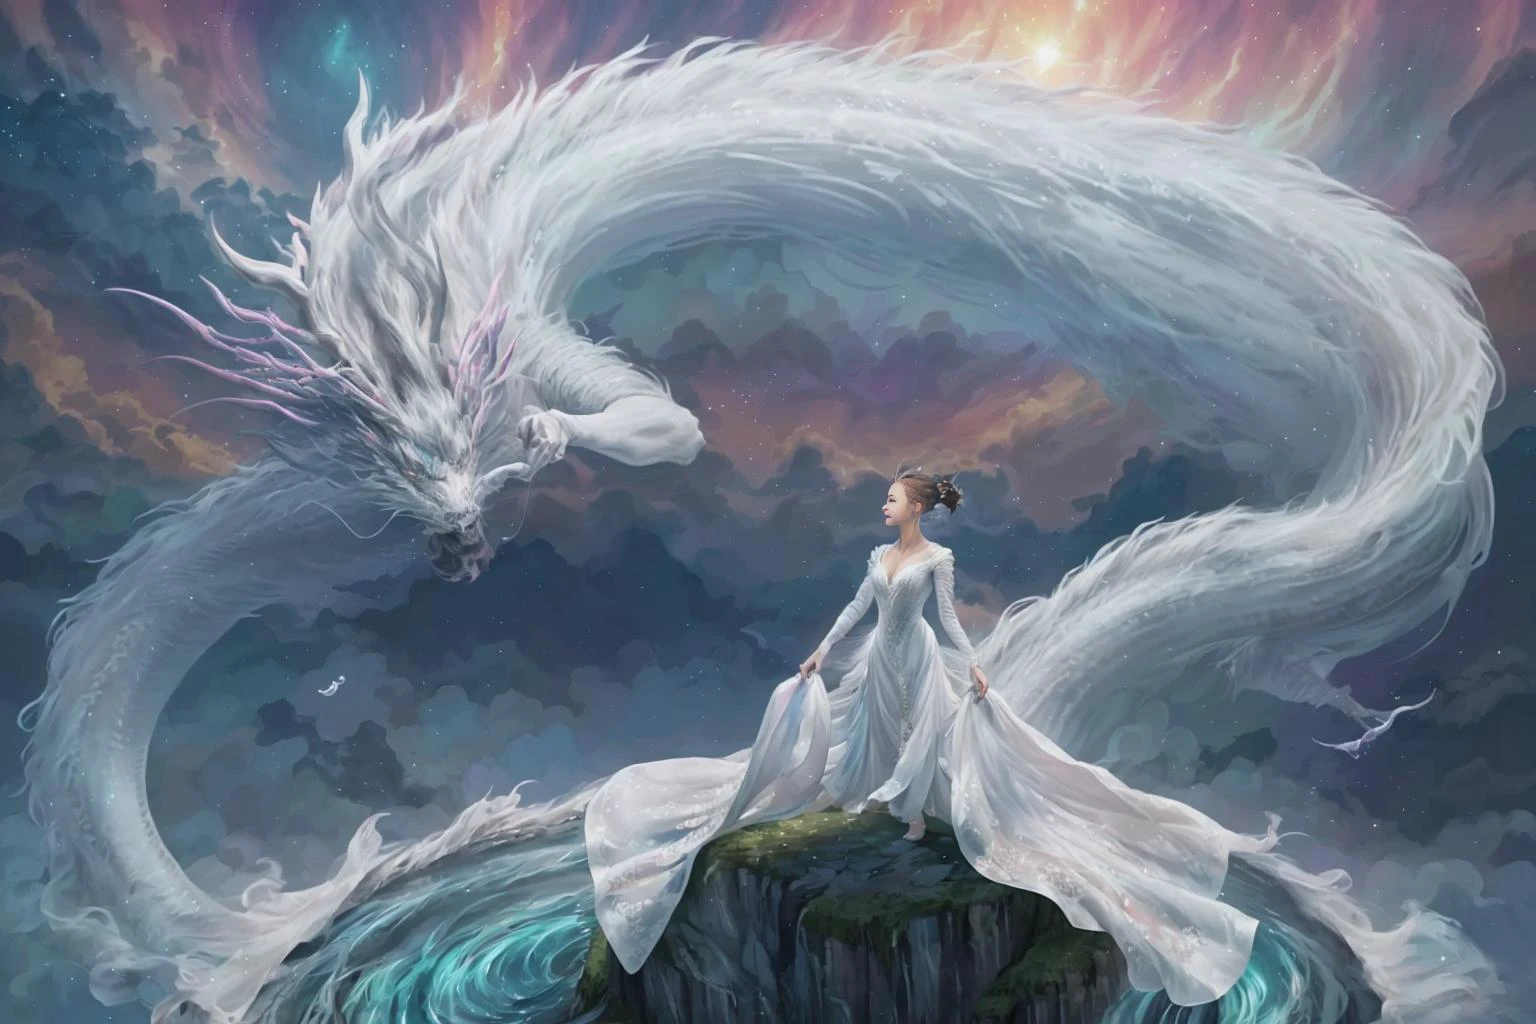 Dans une image captivante, une femme élégante vêtue d&#39;une robe chinoise blanche glisse dans le ciel au sommet d&#39;un dragon chinois mythique. Alors qu&#39;ils traversent les cieux, sa robe fluide et les écailles irisées du dragon créent une vision fascinante d&#39;harmonie et de beauté surnaturelle. 
hdr, (photoréalisme, qualité de chef-d&#39;œuvre, meilleure qualité), , pureerosface_v1,ulzzang-6500-v1.1,